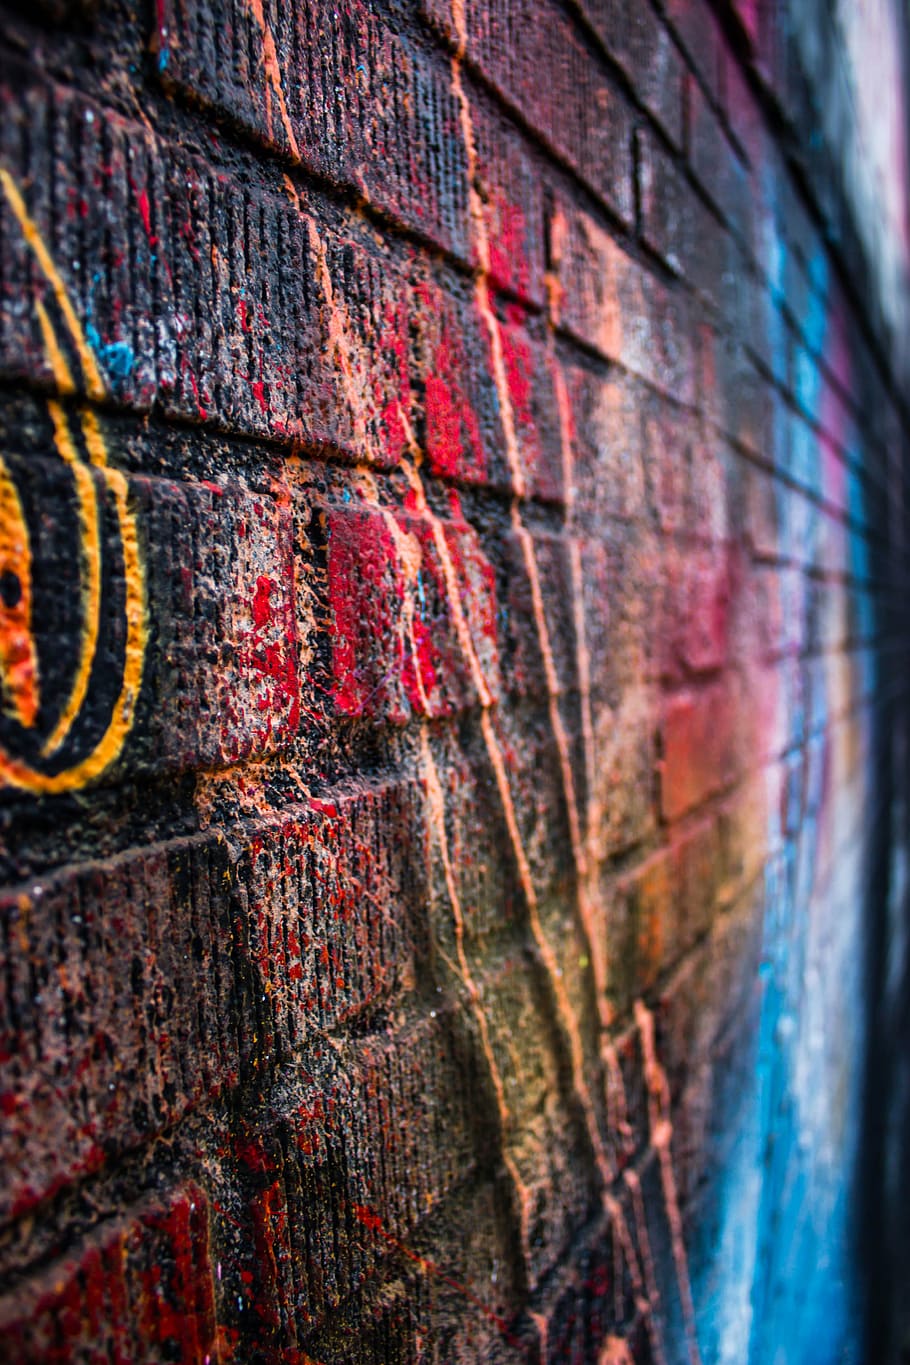 marrom, parede de tijolos, graffitis, foto, grafite, rua, arte, cores, parede, tijolos